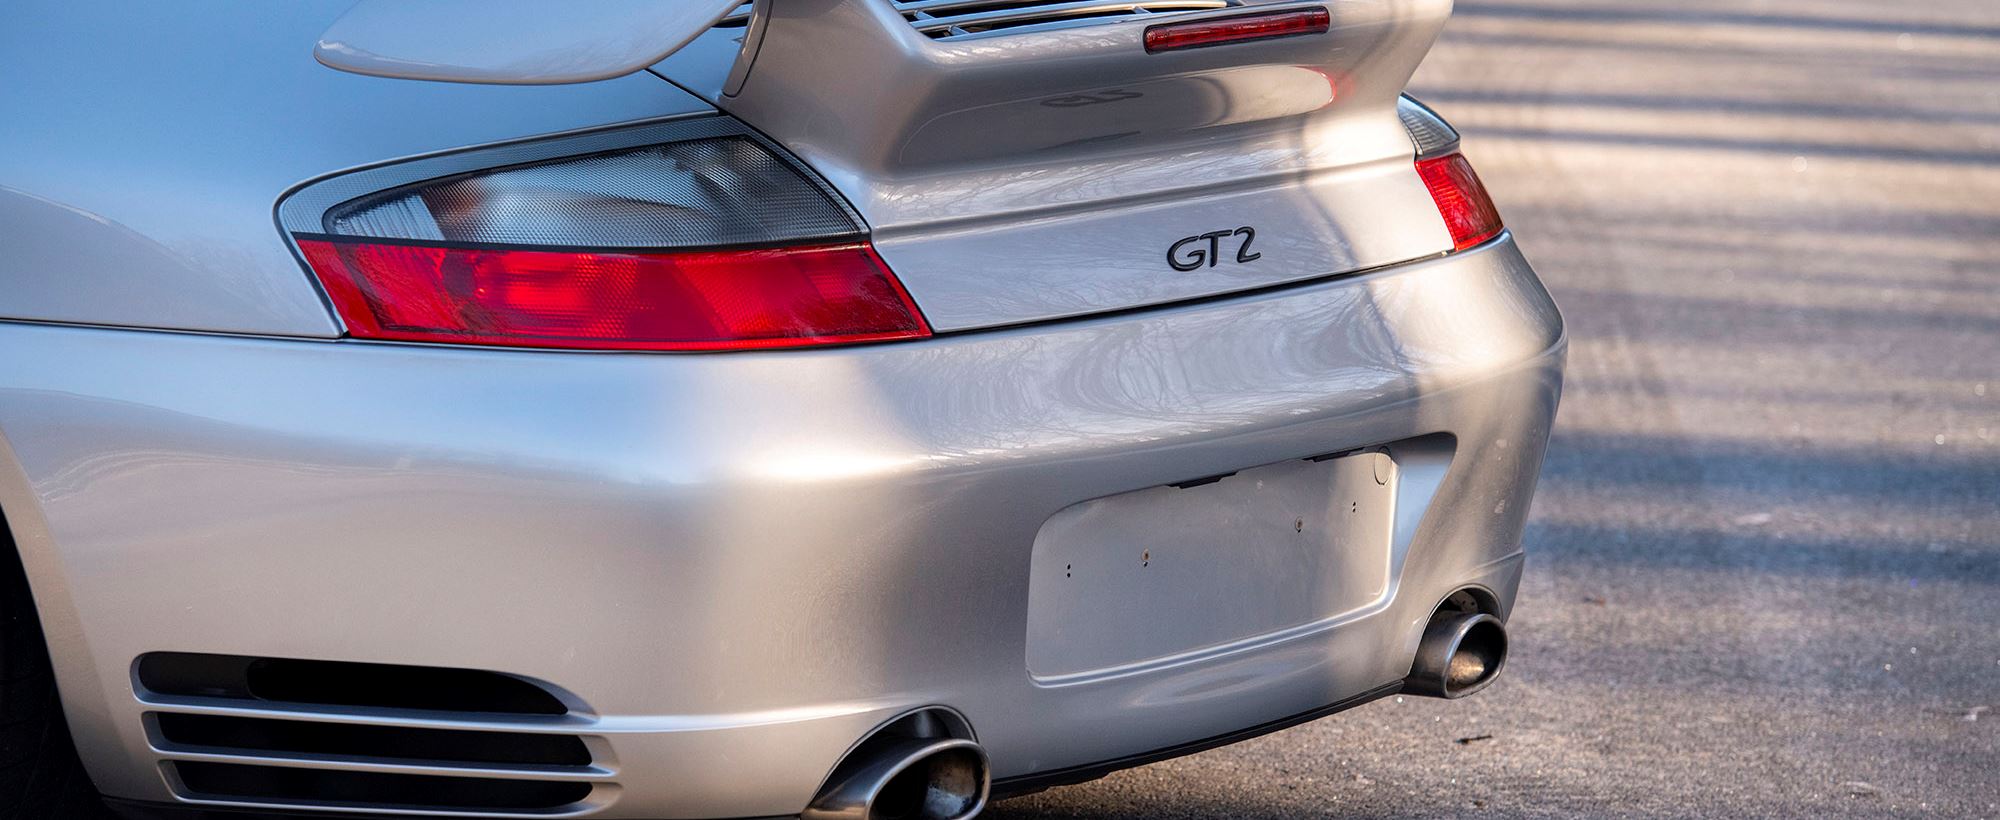 Porsche GT2 022.jpg